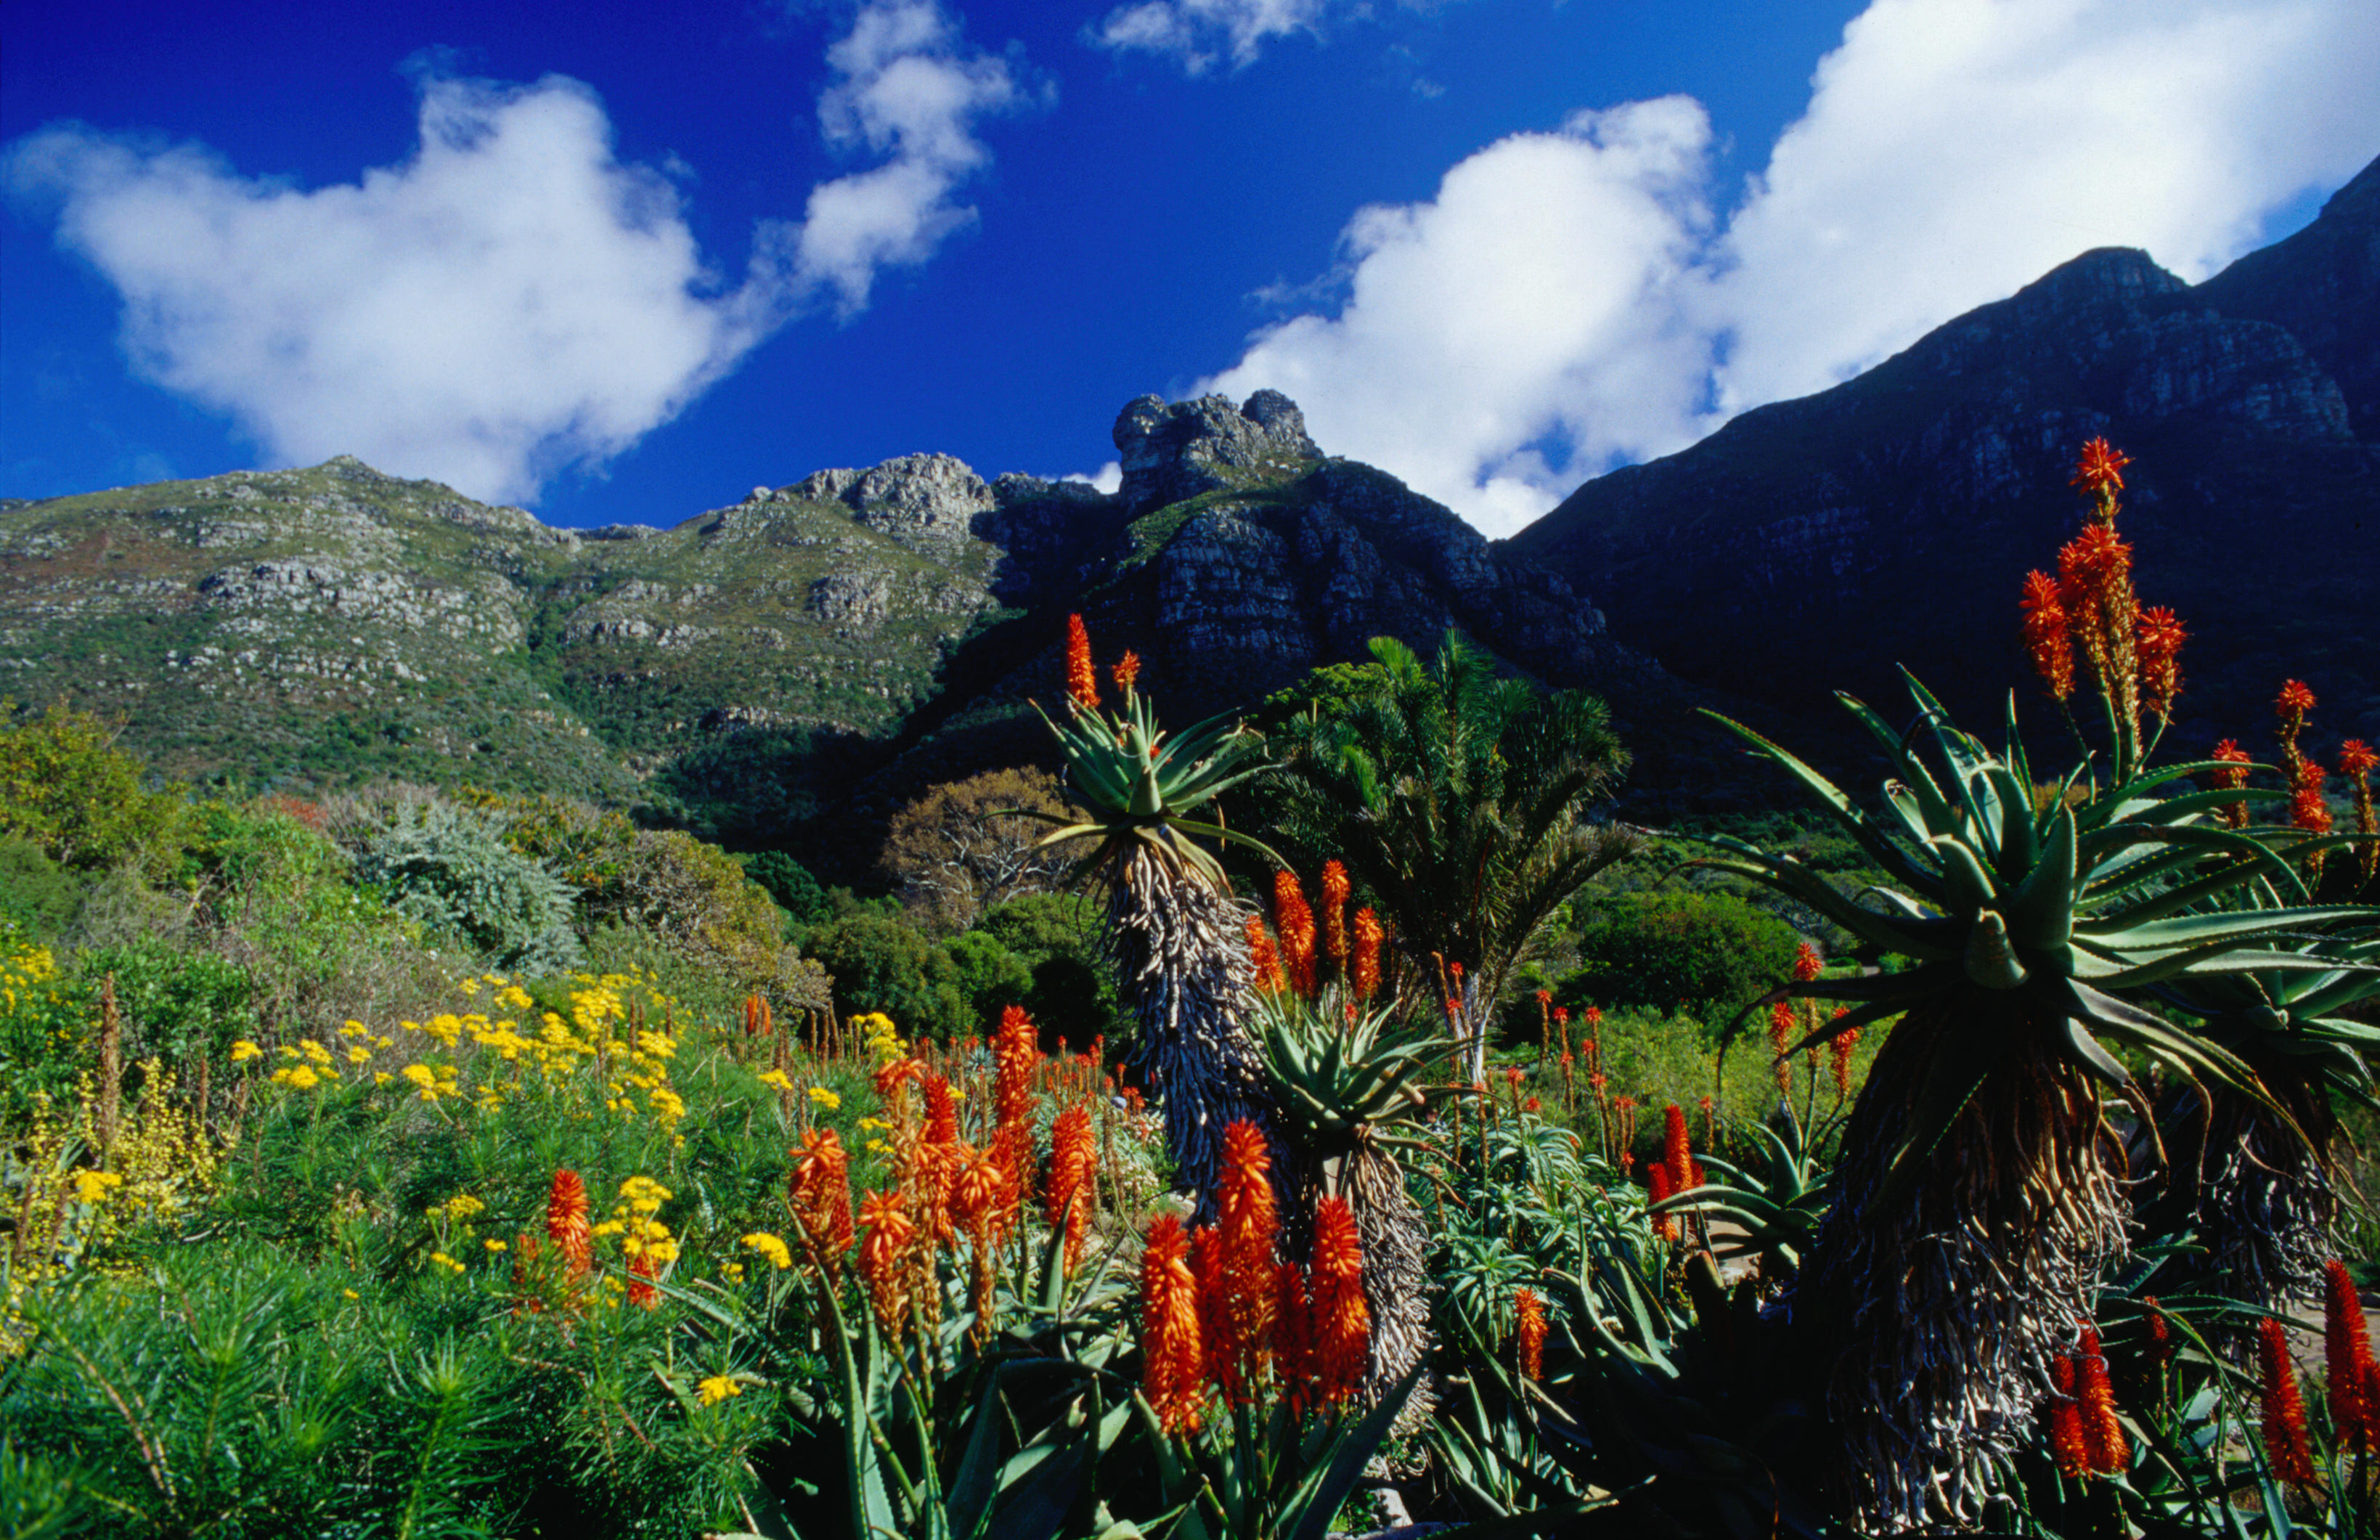 Kirstenbosch National Botanical Garden | Cape Town, South Africa